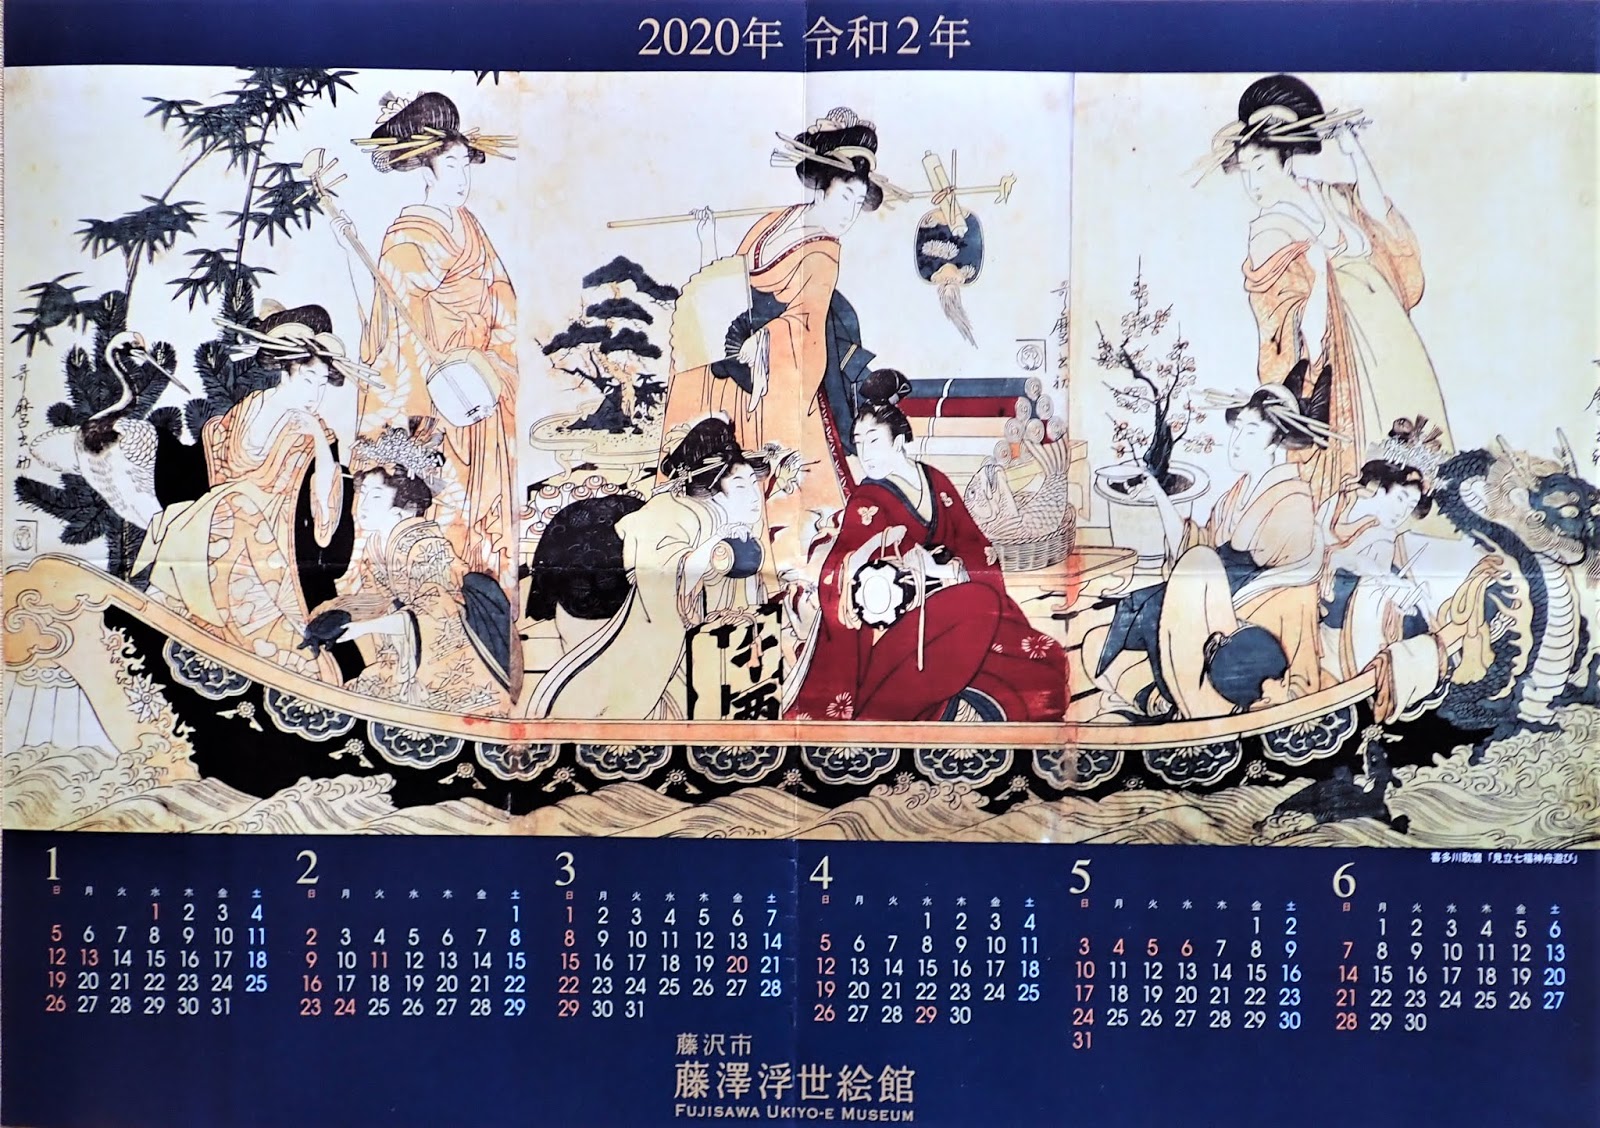 八郷の日々: 浮世絵カレンダー